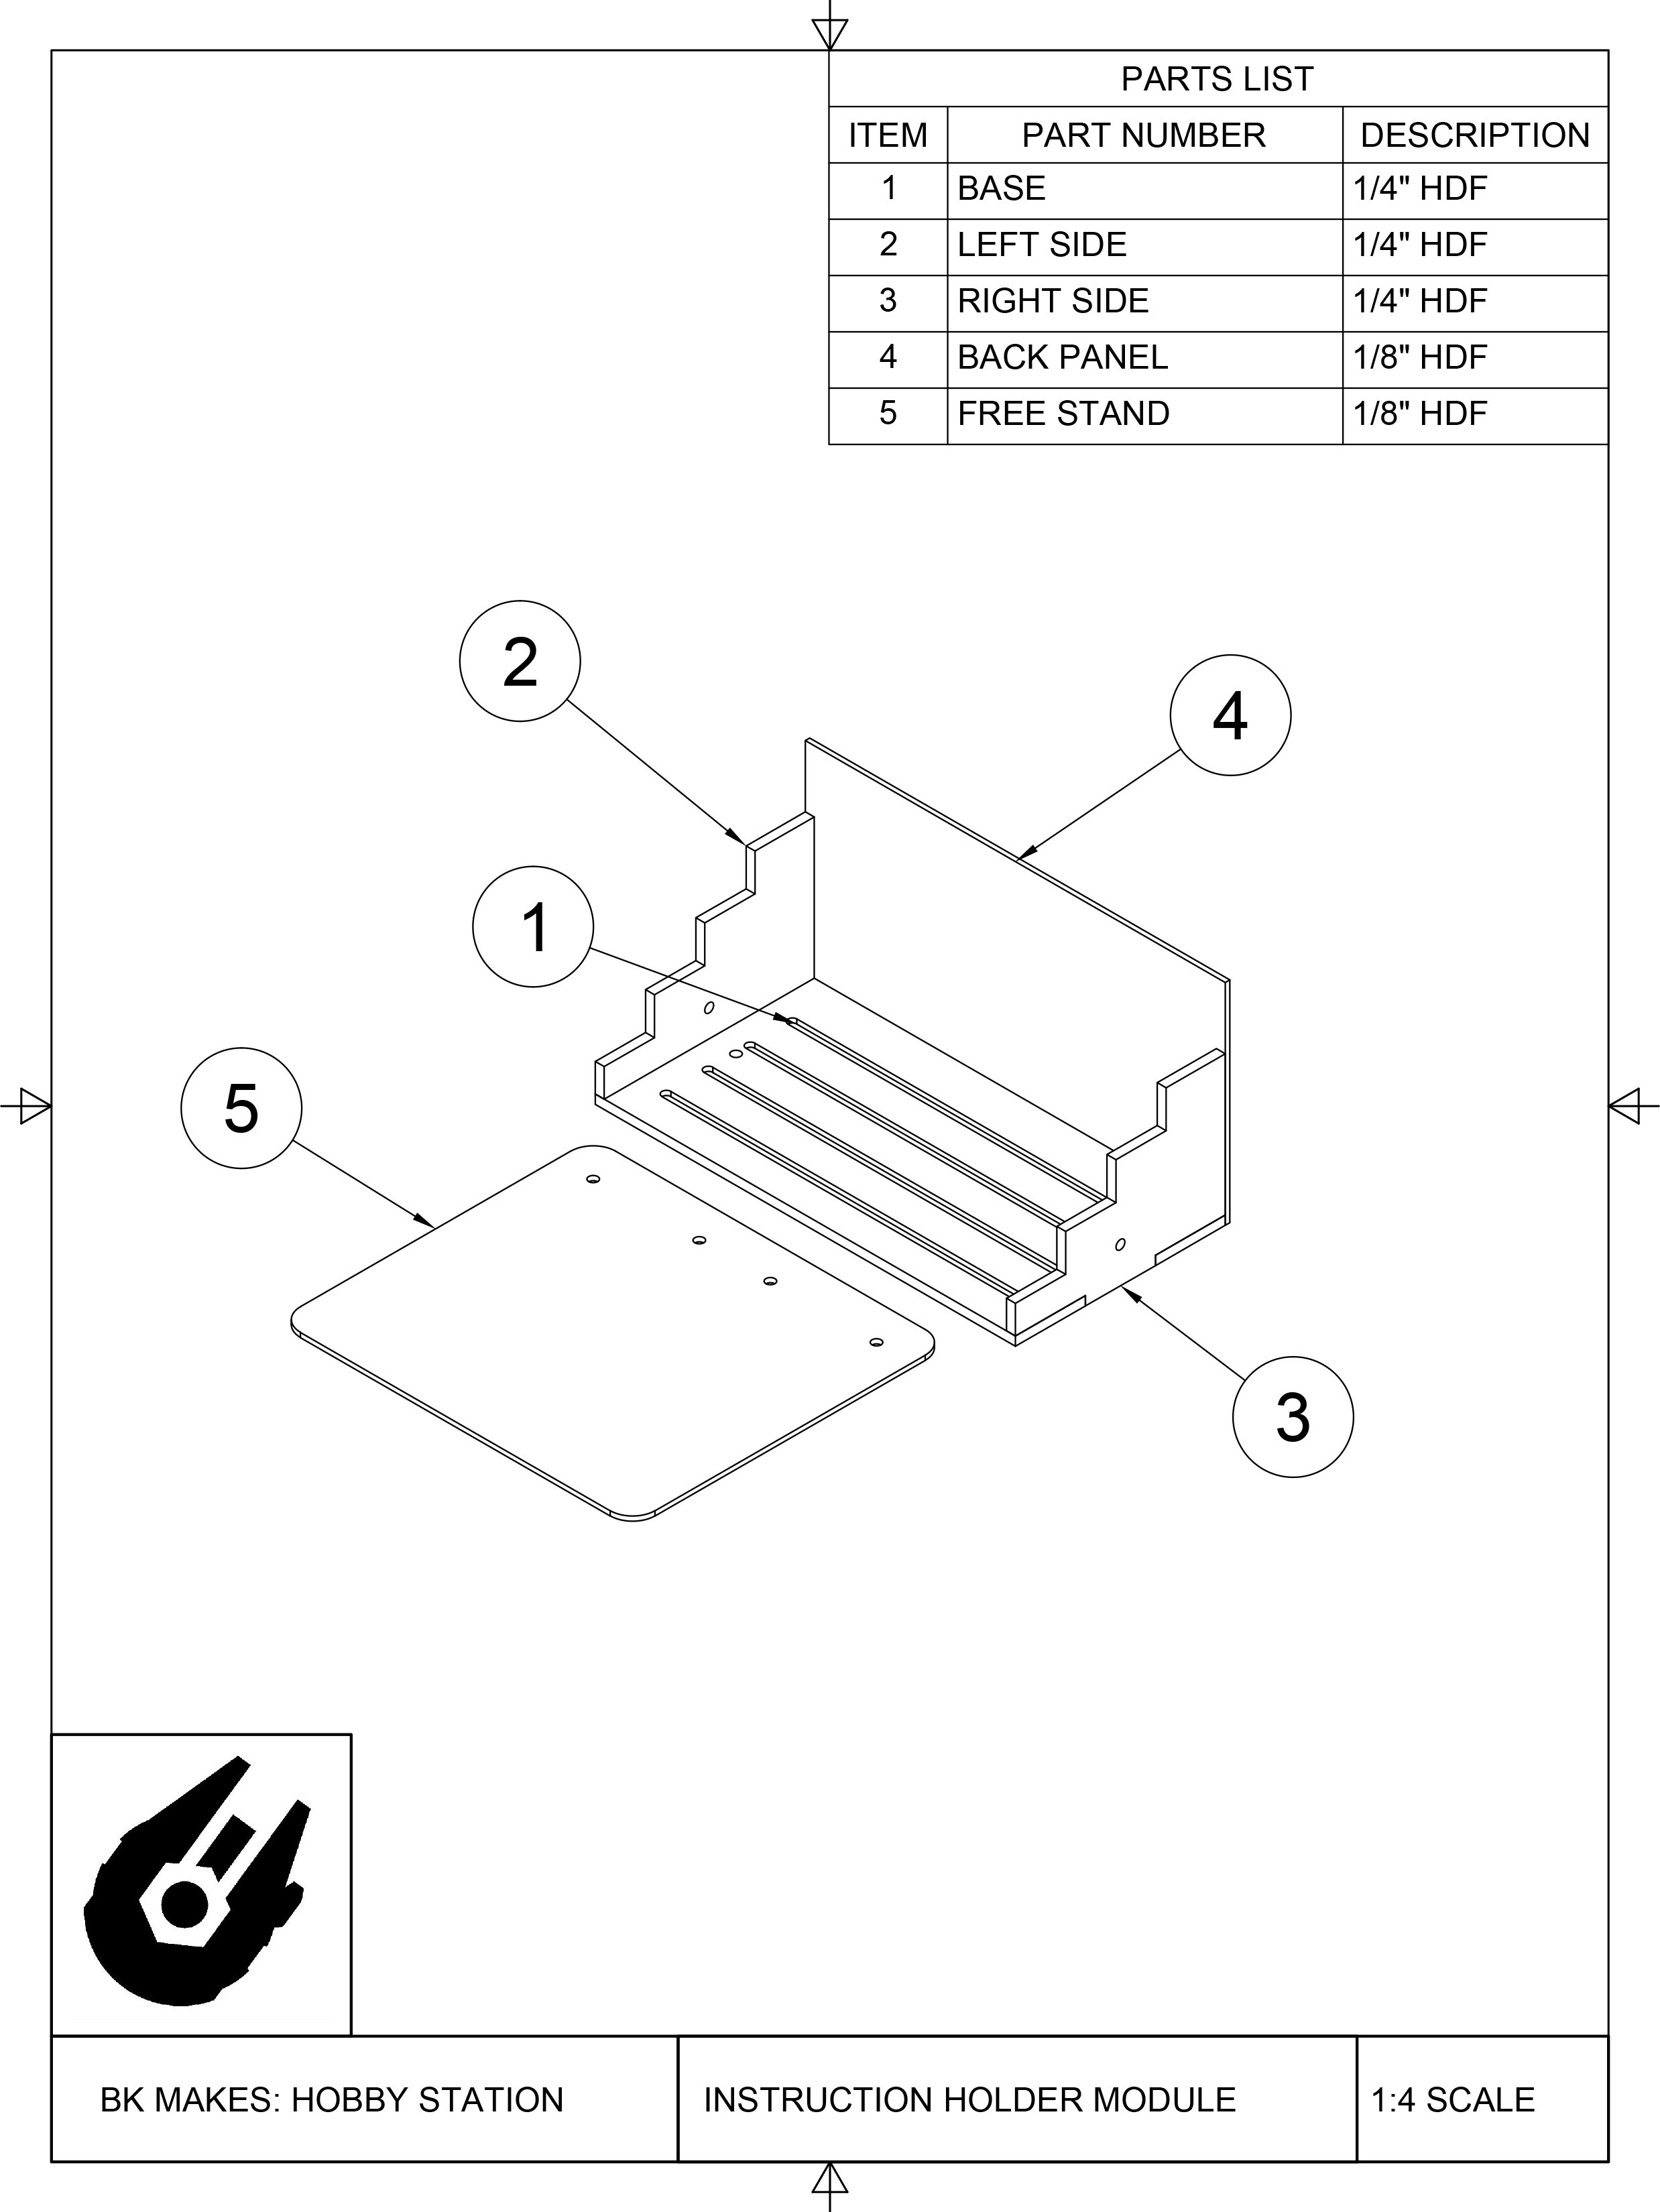 BK MAKES Instruction Holder Module Assembly Sheet.jpg